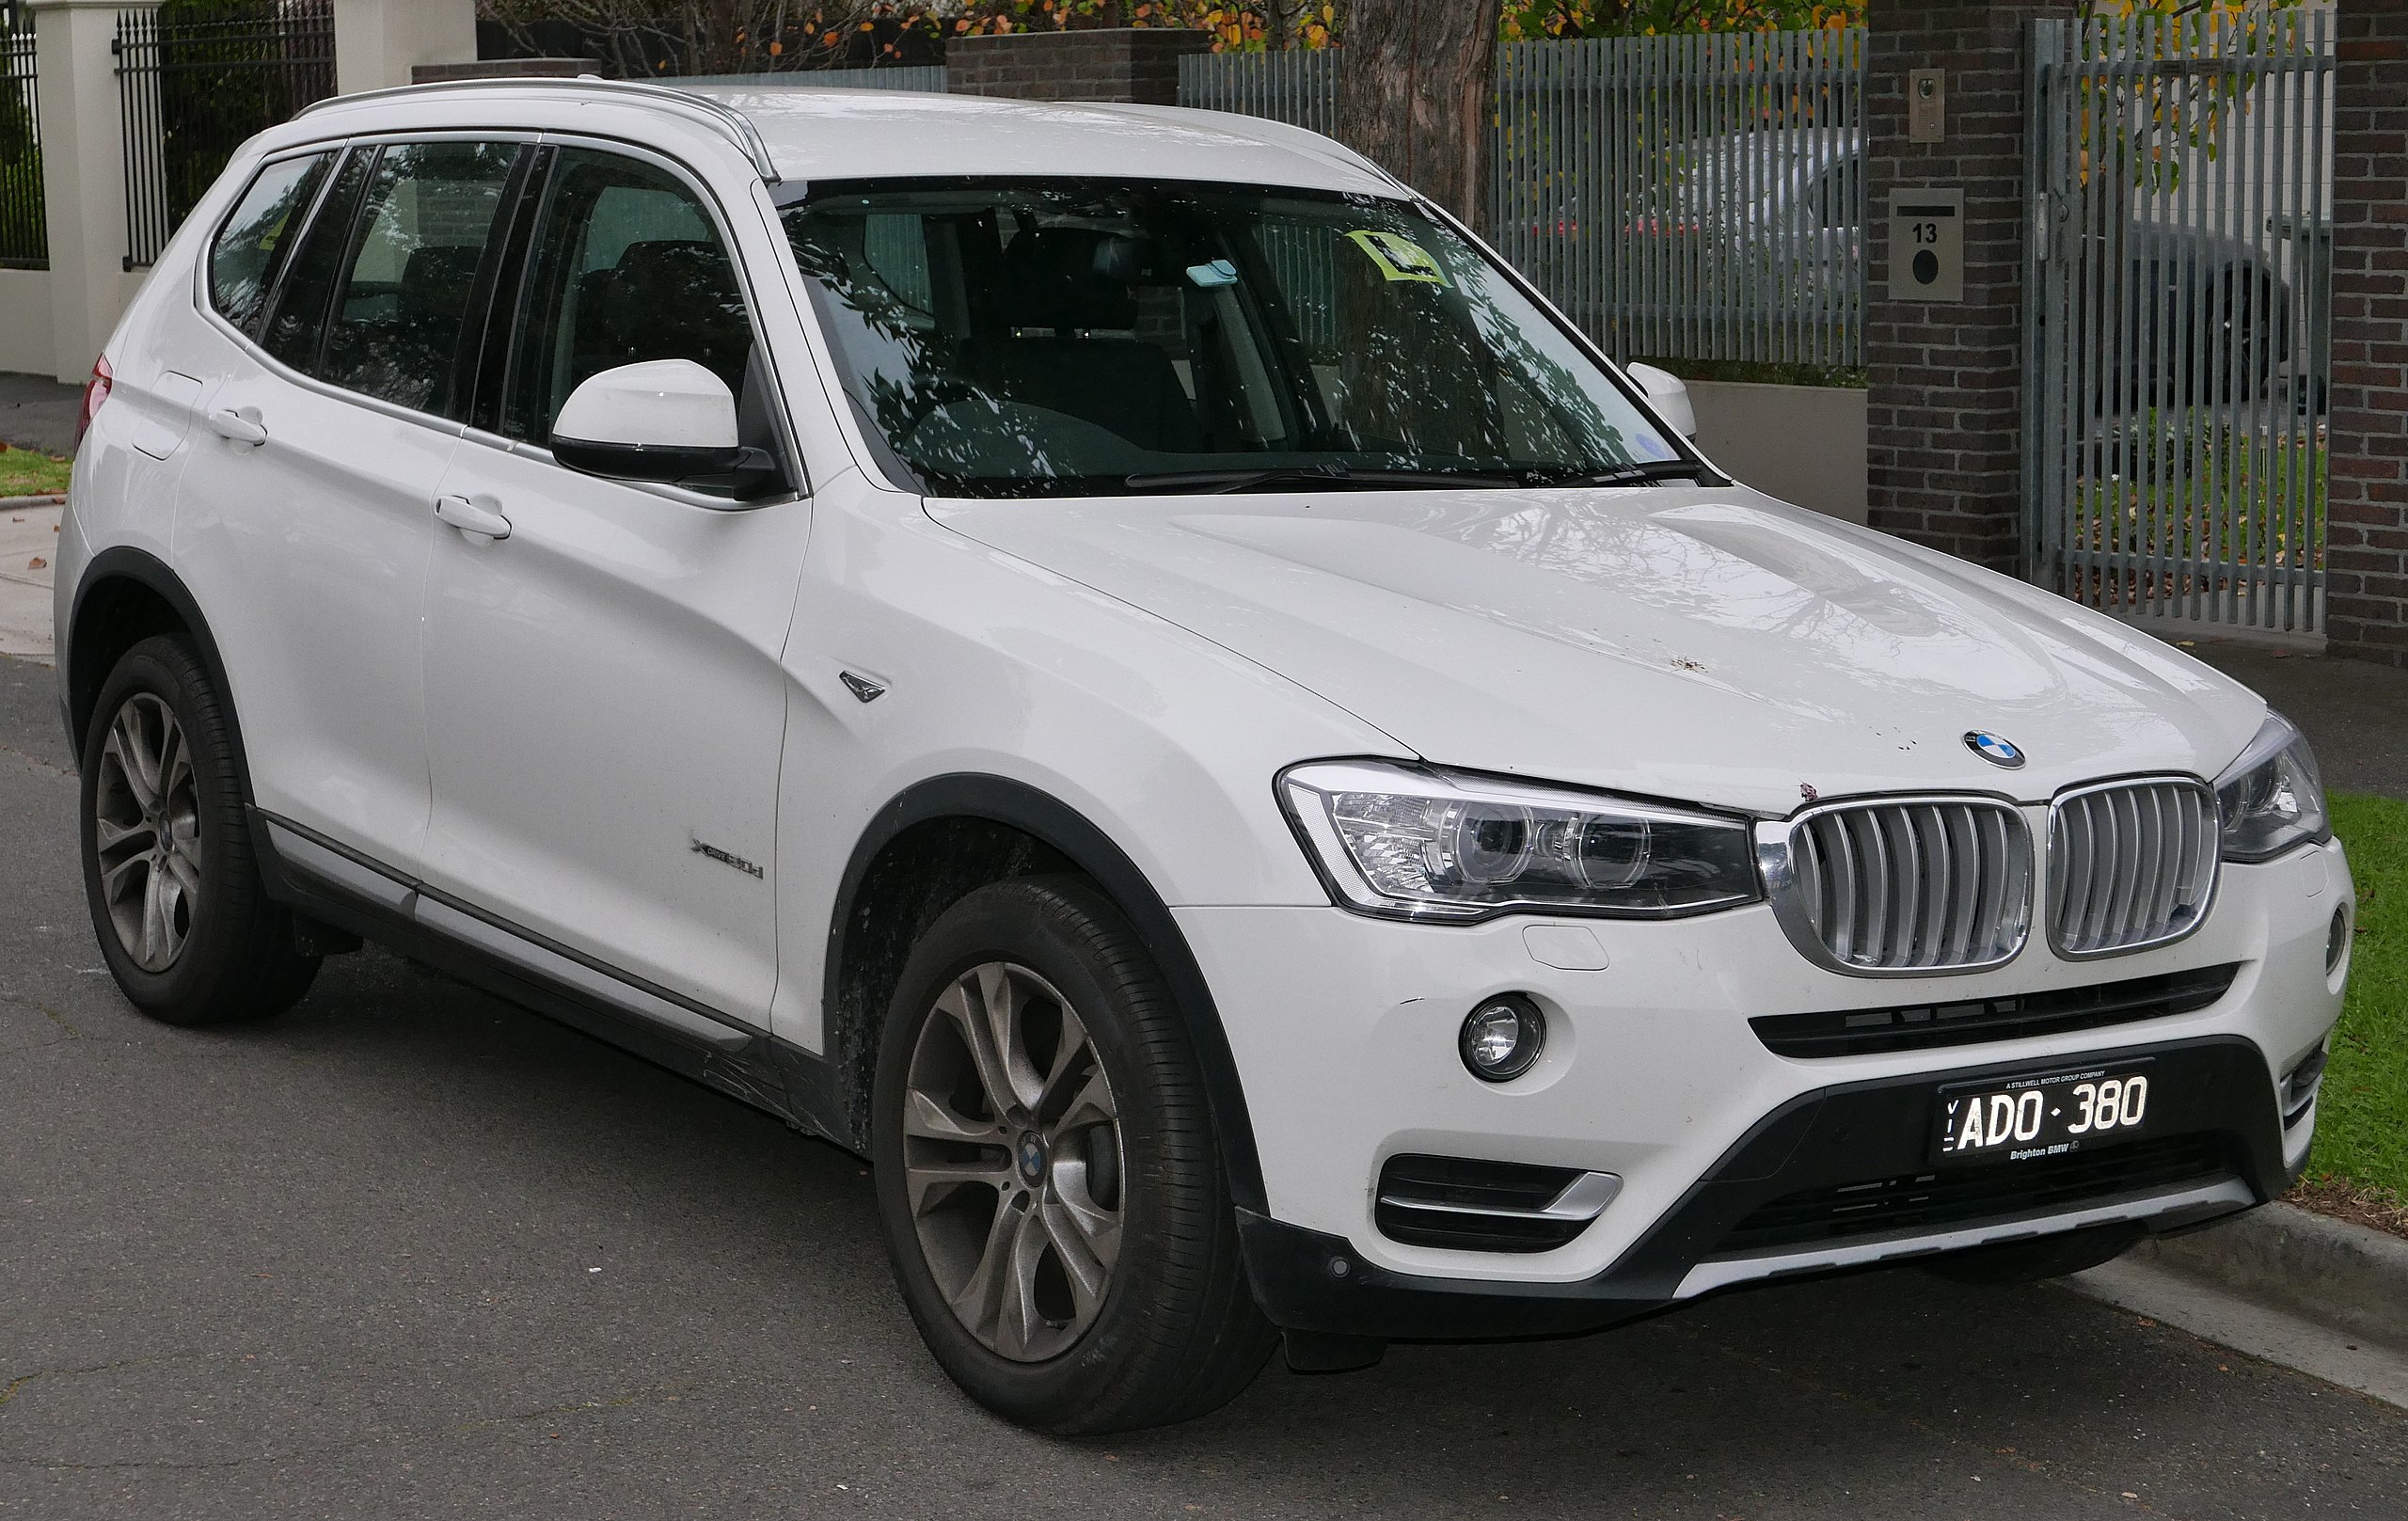 Datei:2015 BMW X3 (F25 LCI) xDrive20d wagon (2015-06-27).jpg – Wikipedia